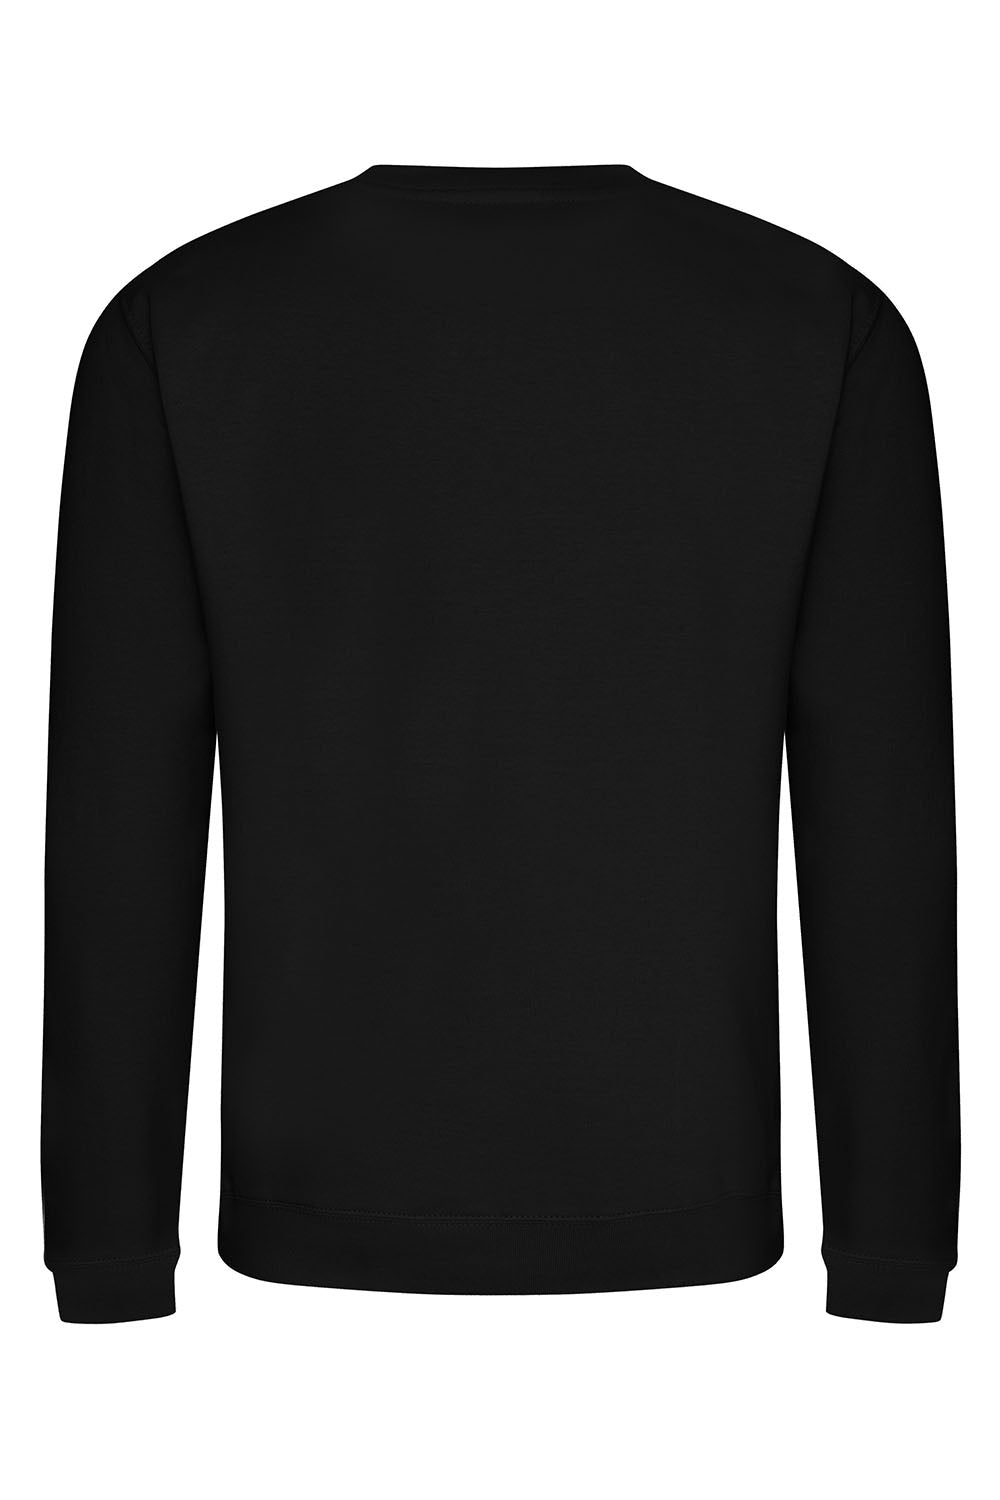 Stay Western Sweatshirt In Black (Custom Pack)